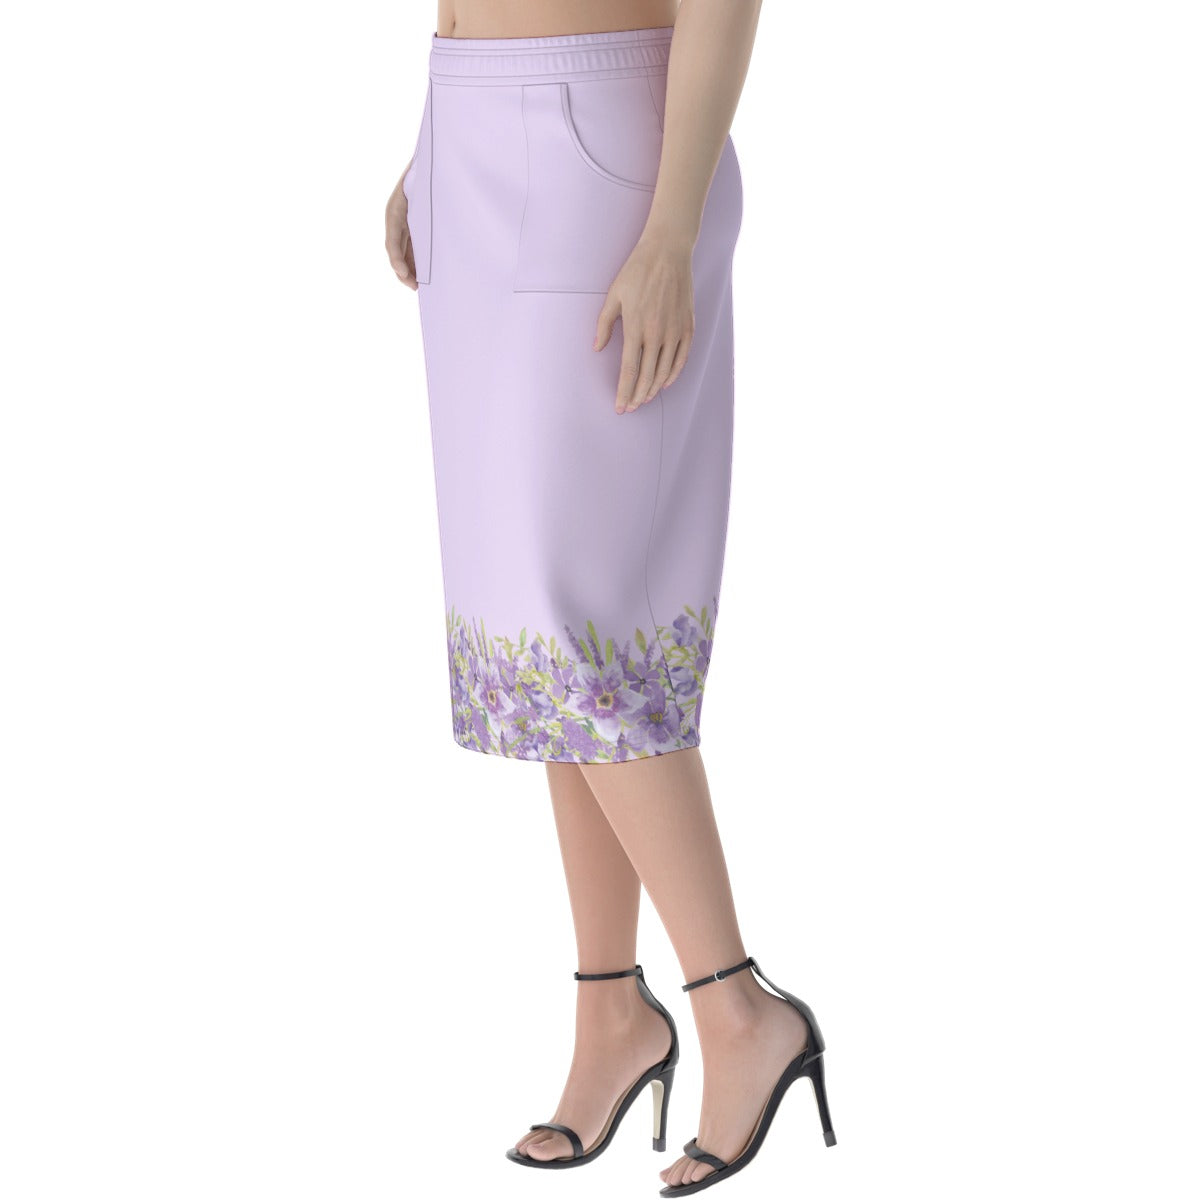 All-Over Print Women's Long Hip Skirt